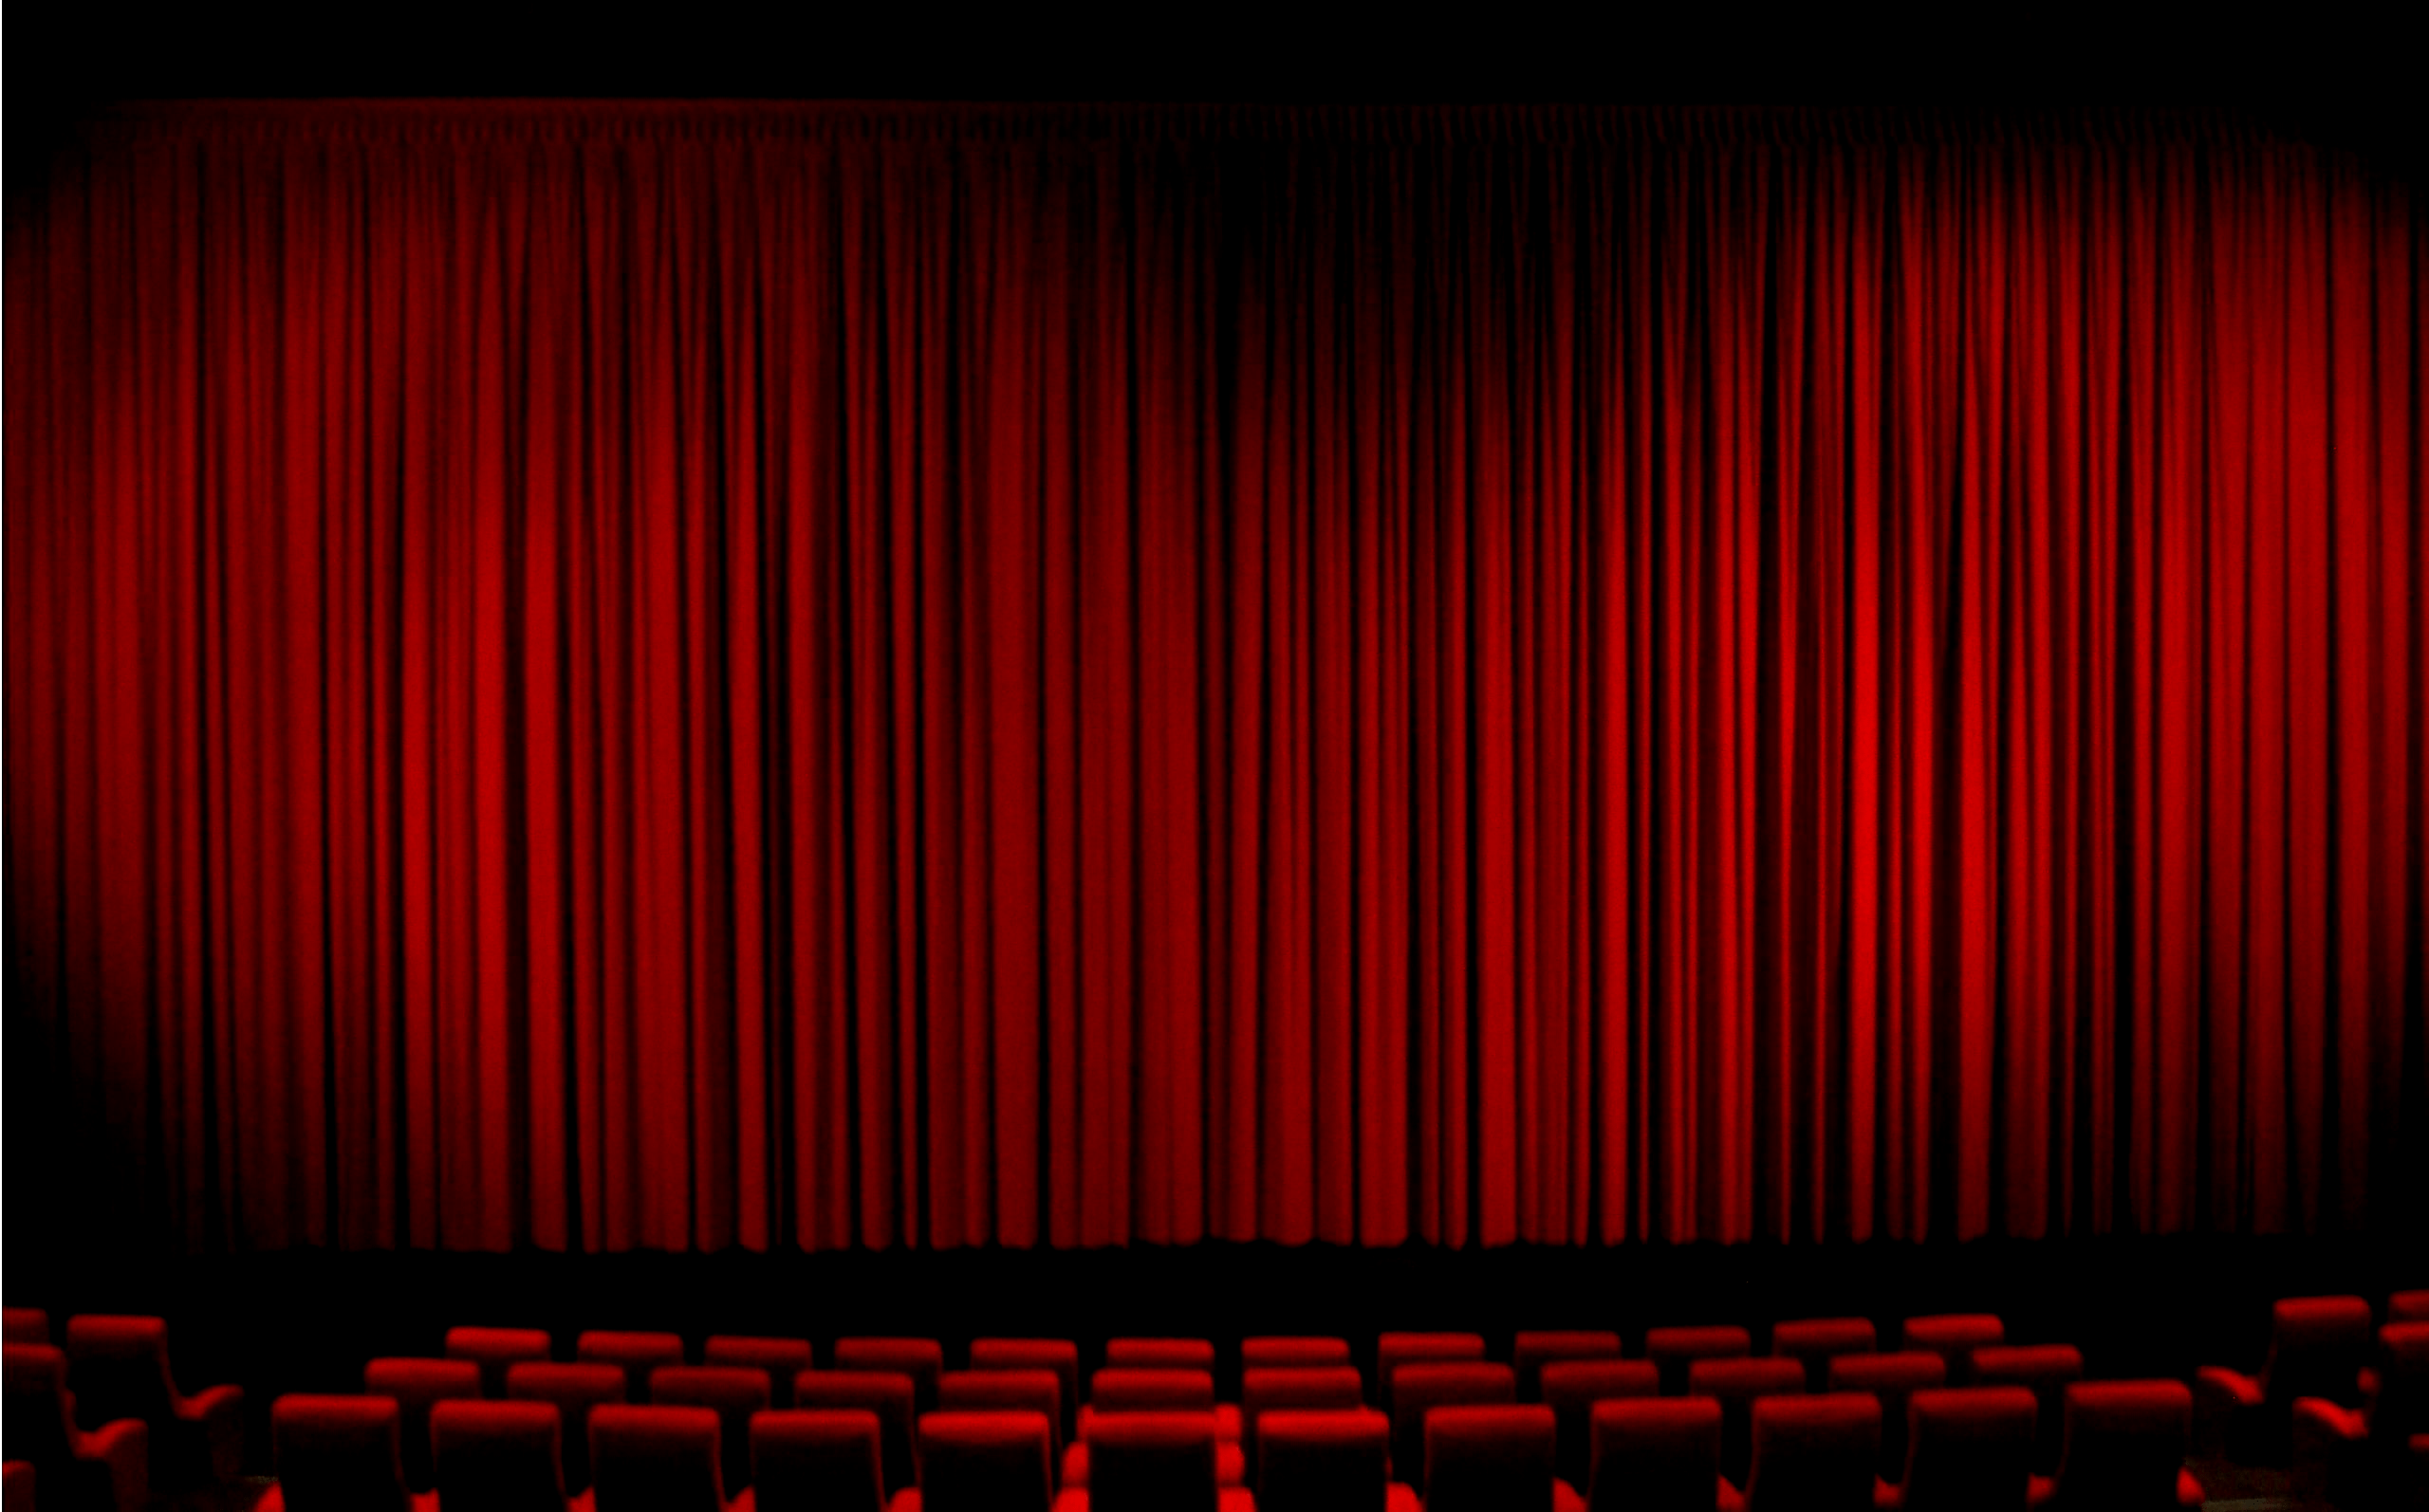 عکس پرده سینما در سالن چیده شده با صندلی های قرمز 